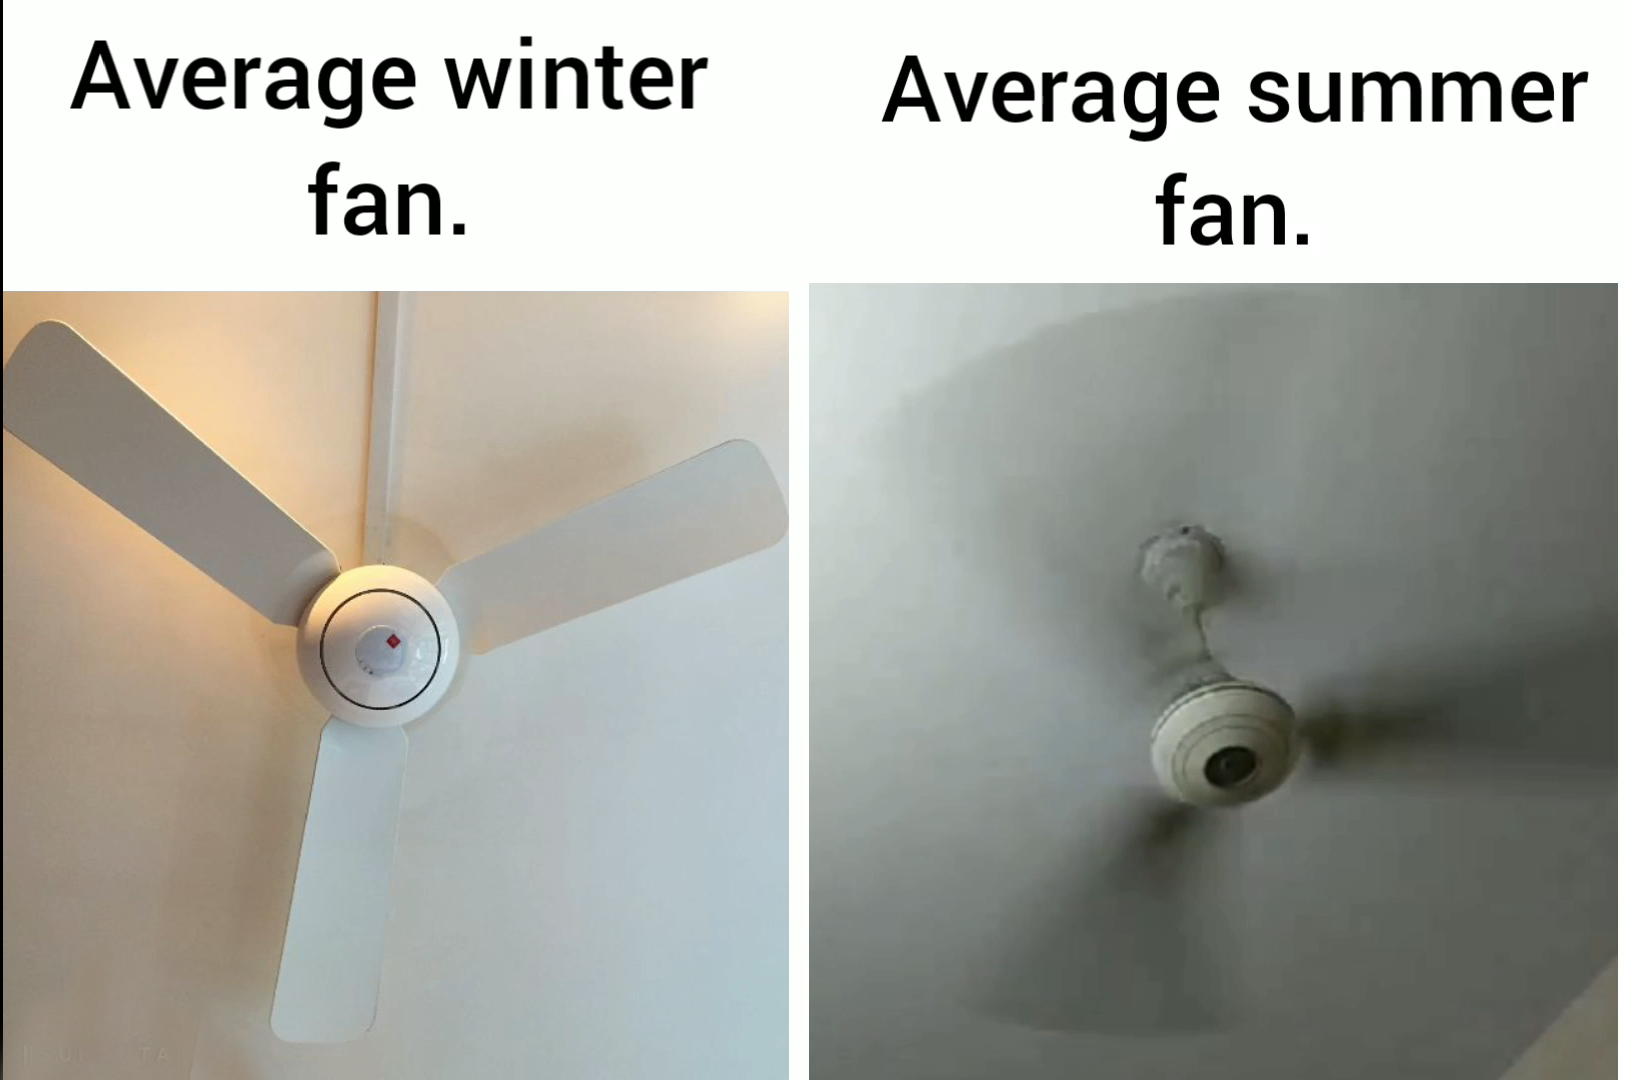 dank memes - funny memes - lighting - Average winter fan. Average summer fan.